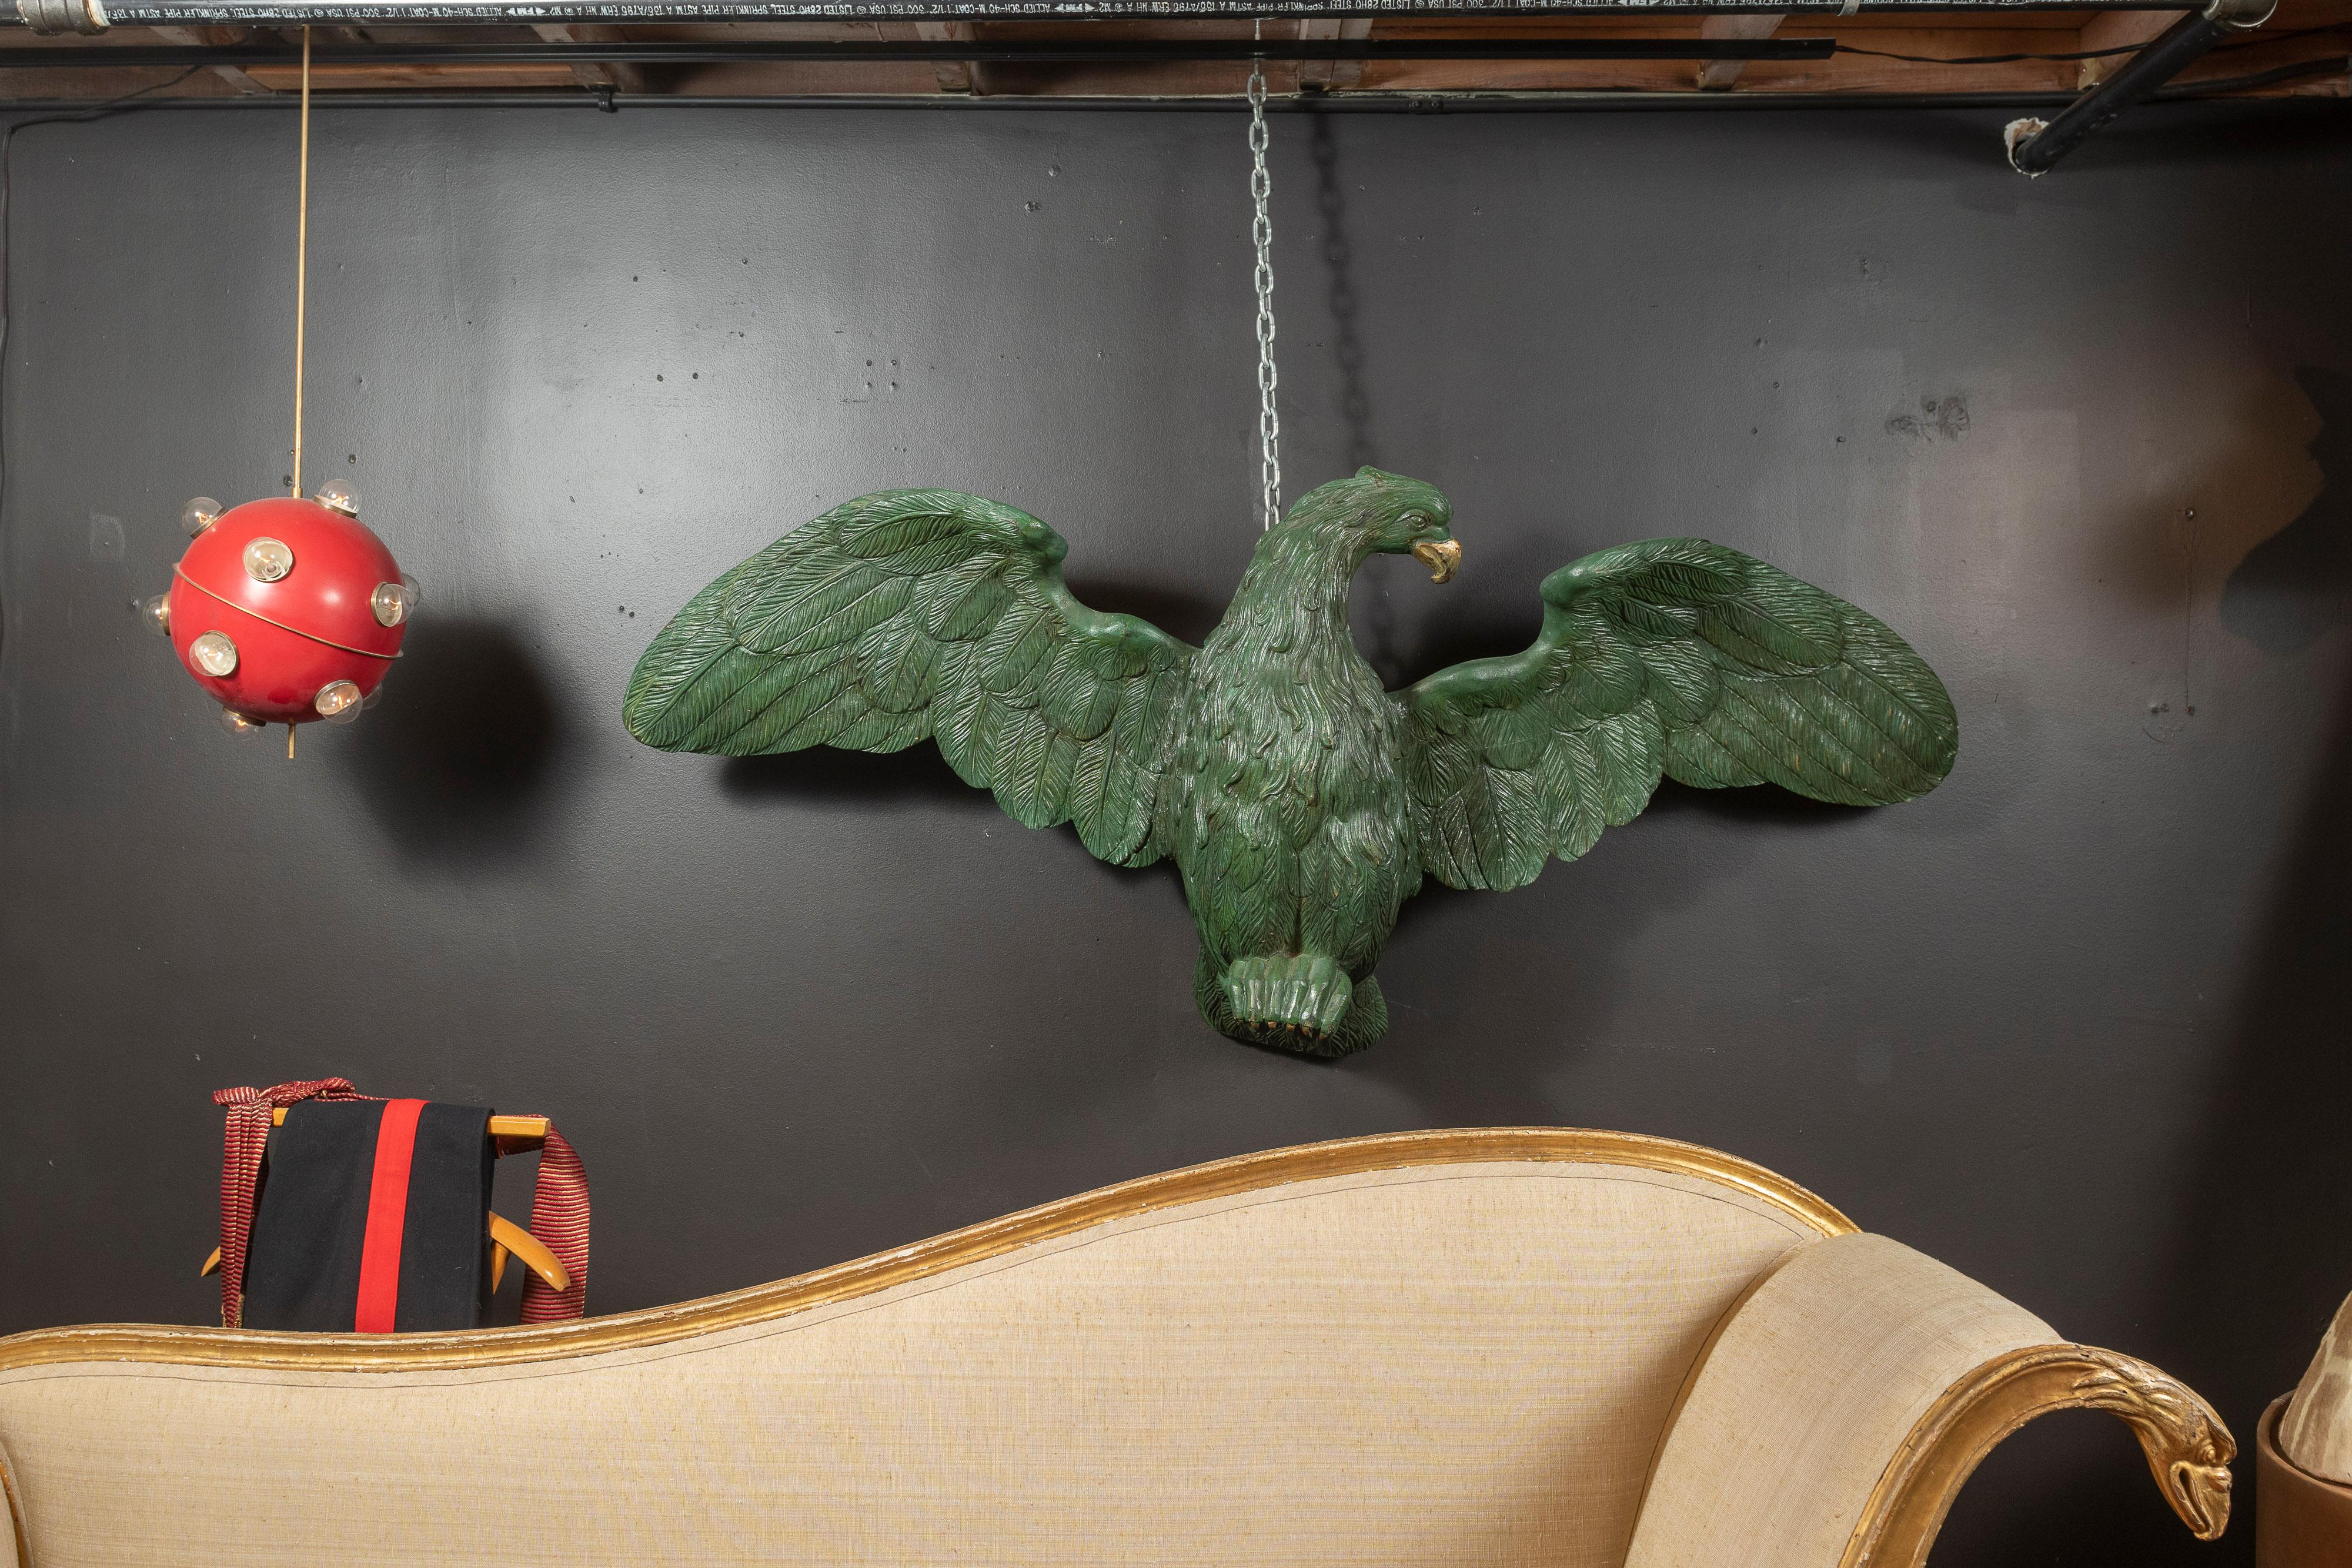 L'aigle antique en bois sculpté, peint en vert avec des accents dorés, fait une impression impressionnante avec son envergure de 69 pouces lorsqu'il est accroché dans votre maison, votre bureau ou votre entreprise. La pièce est en bon état compte